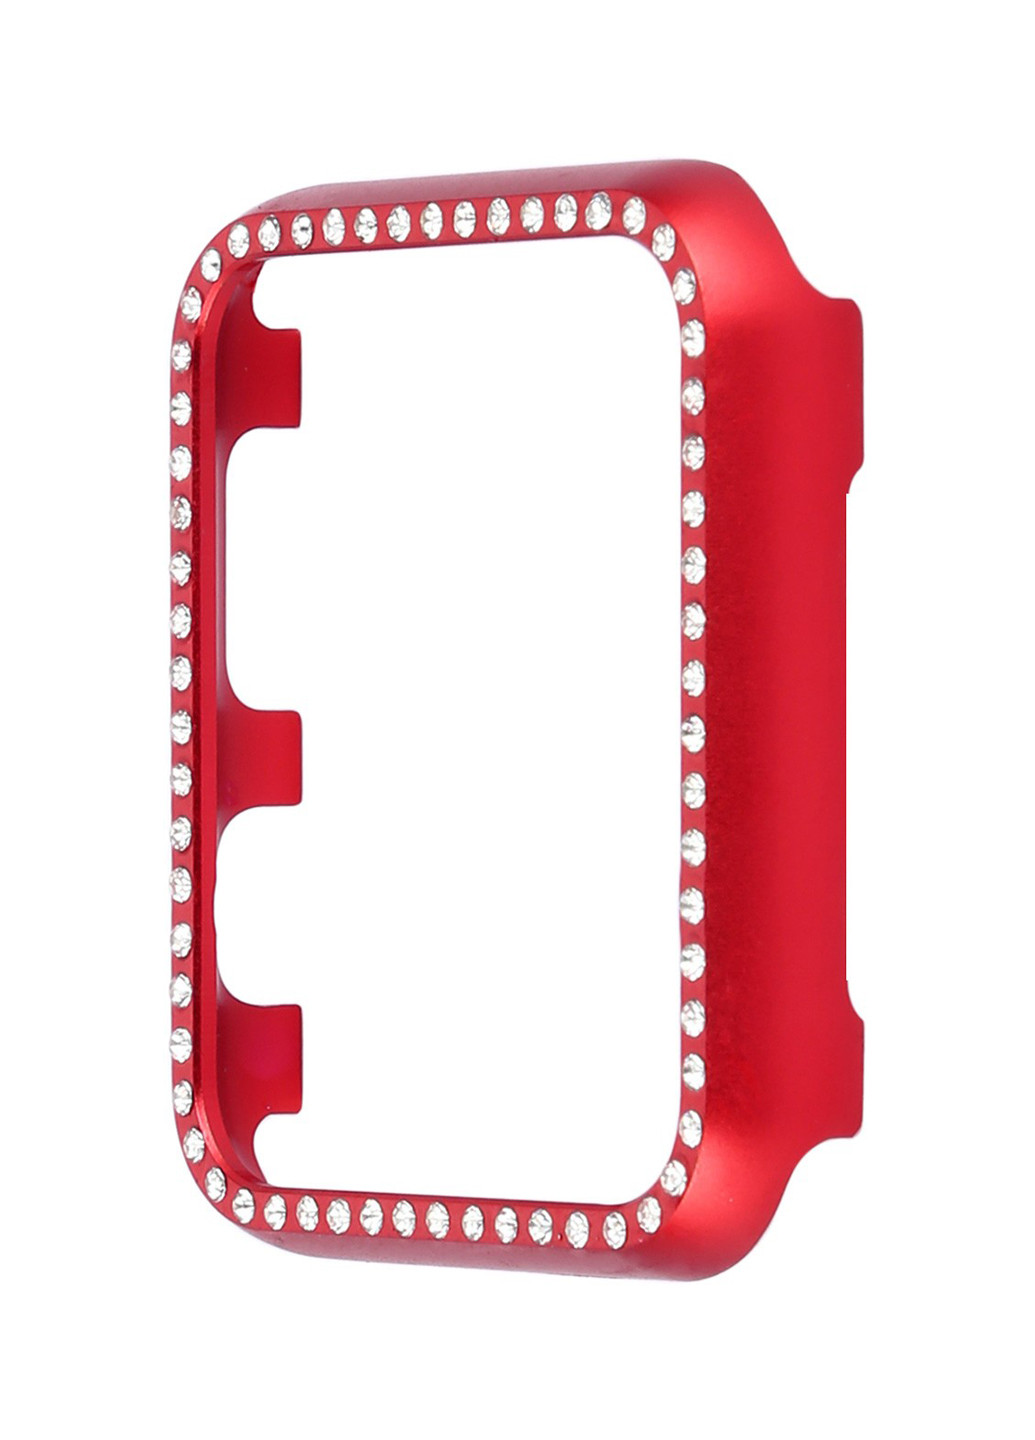 Накладка для часов со стразами Apple Watch 38/40 Aluminium Diamond Red XoKo накладка для часов со стразами apple watch 38/40 xoko aluminium diamond red (143704630)